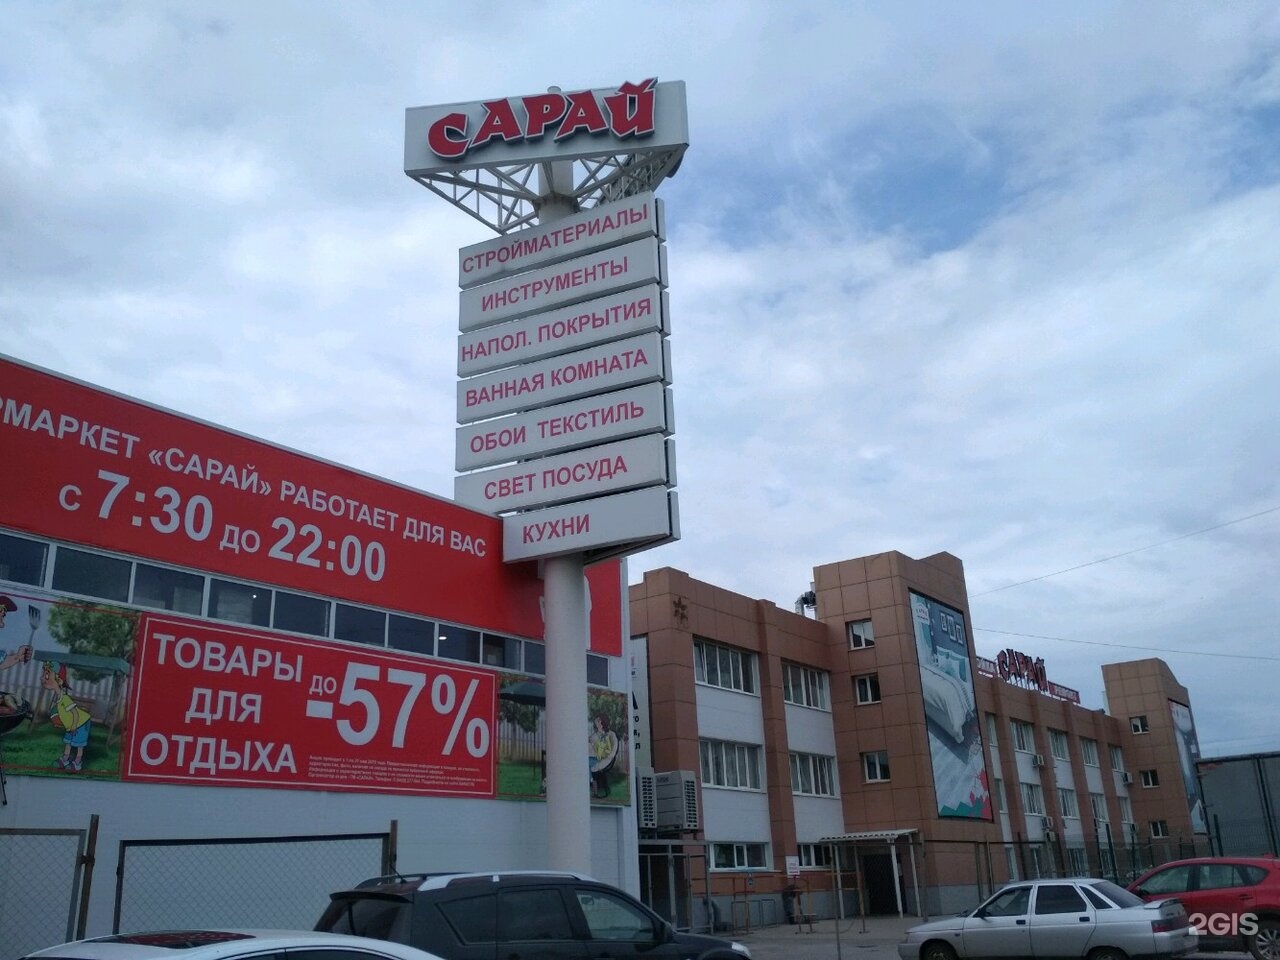 Ульяновск Магазин Сарай Обои